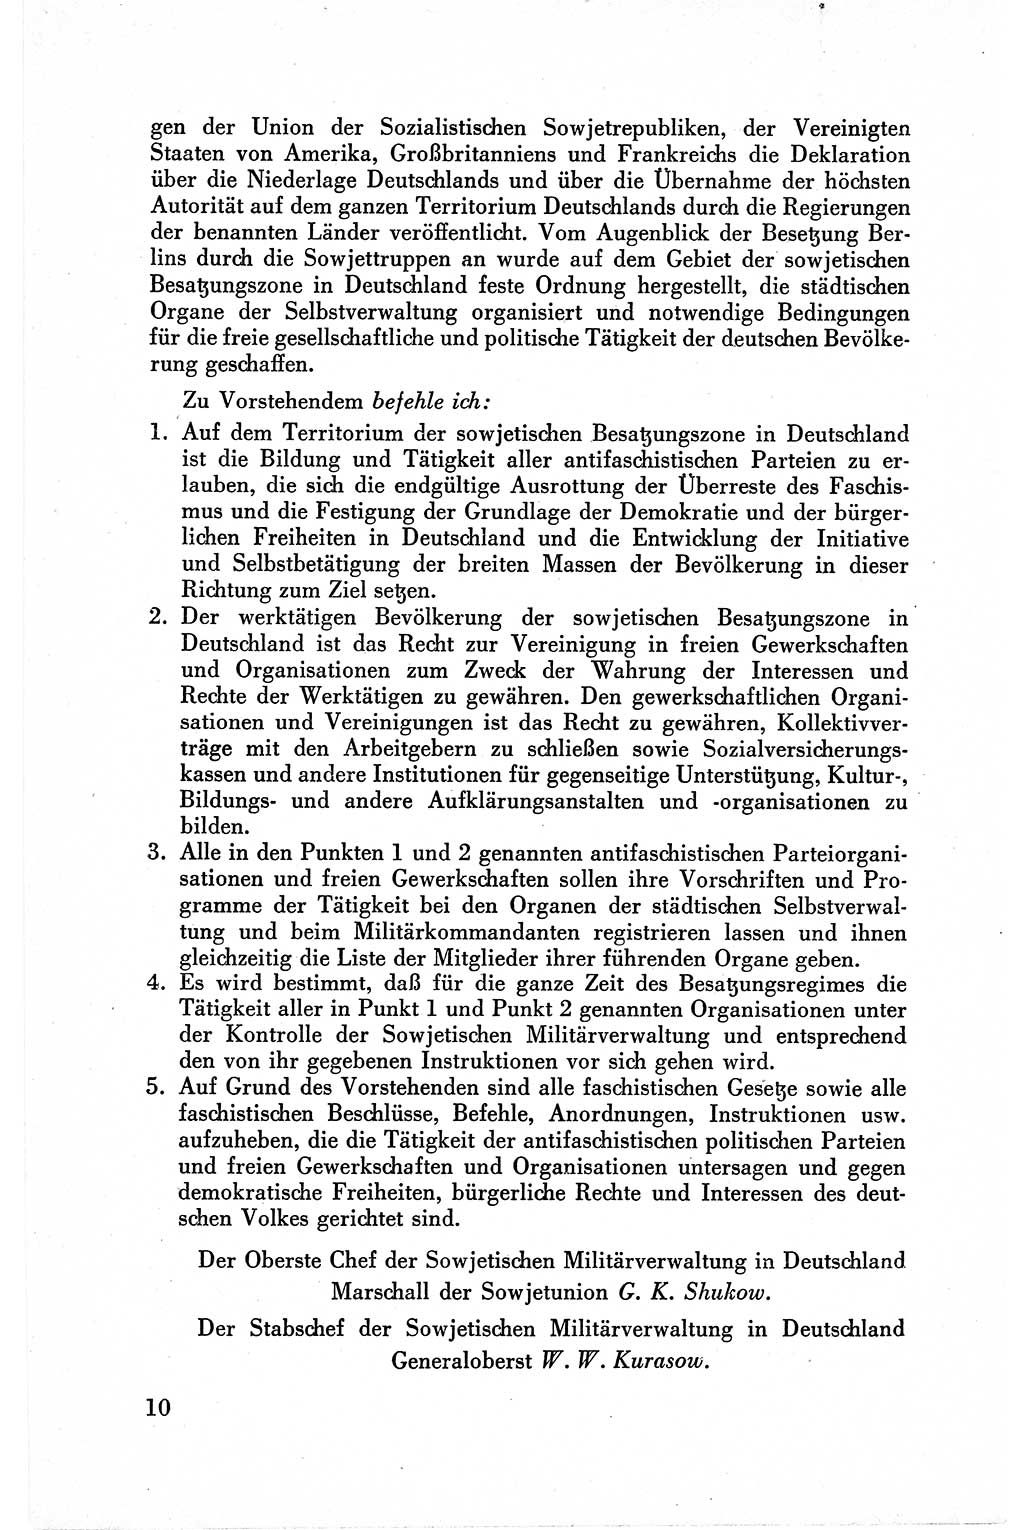 Befehle des Obersten Chefs der Sowjetischen Miltärverwaltung (SMV) in Deutschland - Aus dem Stab der Sowjetischen Militärverwaltung in Deutschland 1945, Seite 10 (Bef. SMV Dtl. 1945, S. 10)